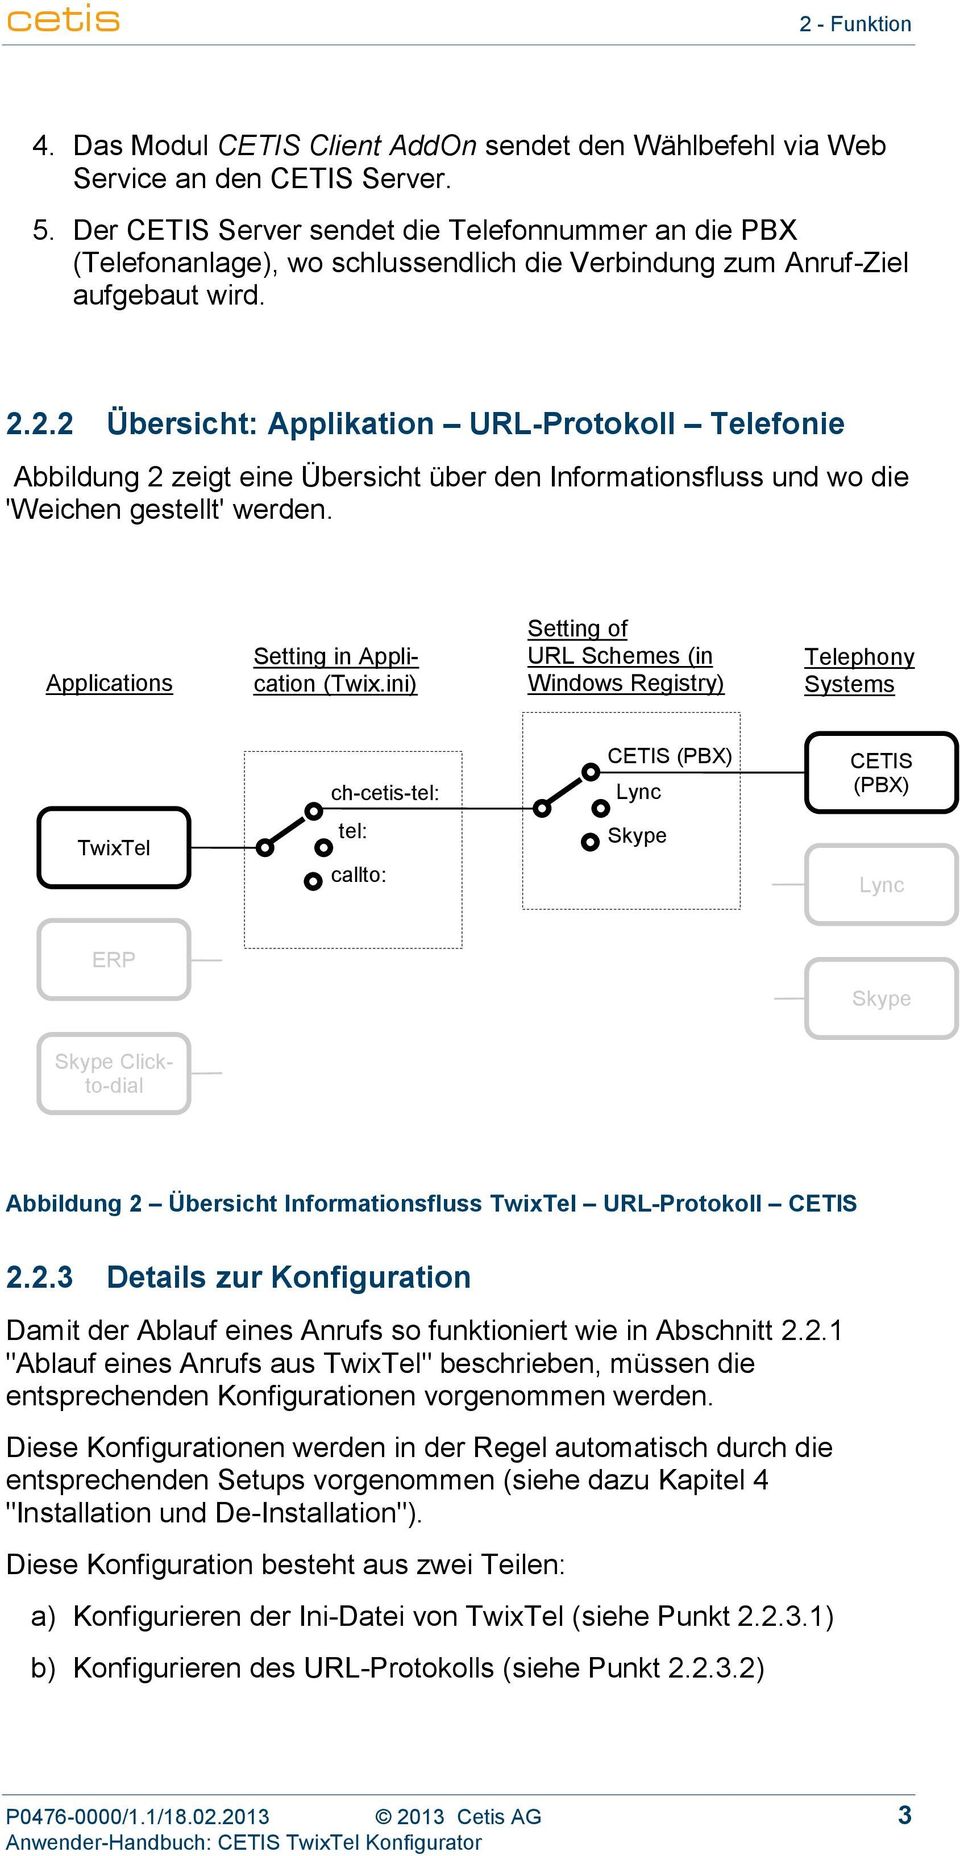 2.2 Übersicht: Applikation URL-Protokoll Telefonie Abbildung 2 zeigt eine Übersicht über den Informationsfluss und wo die 'Weichen gestellt' werden. Applications Setting in Application (Twix.